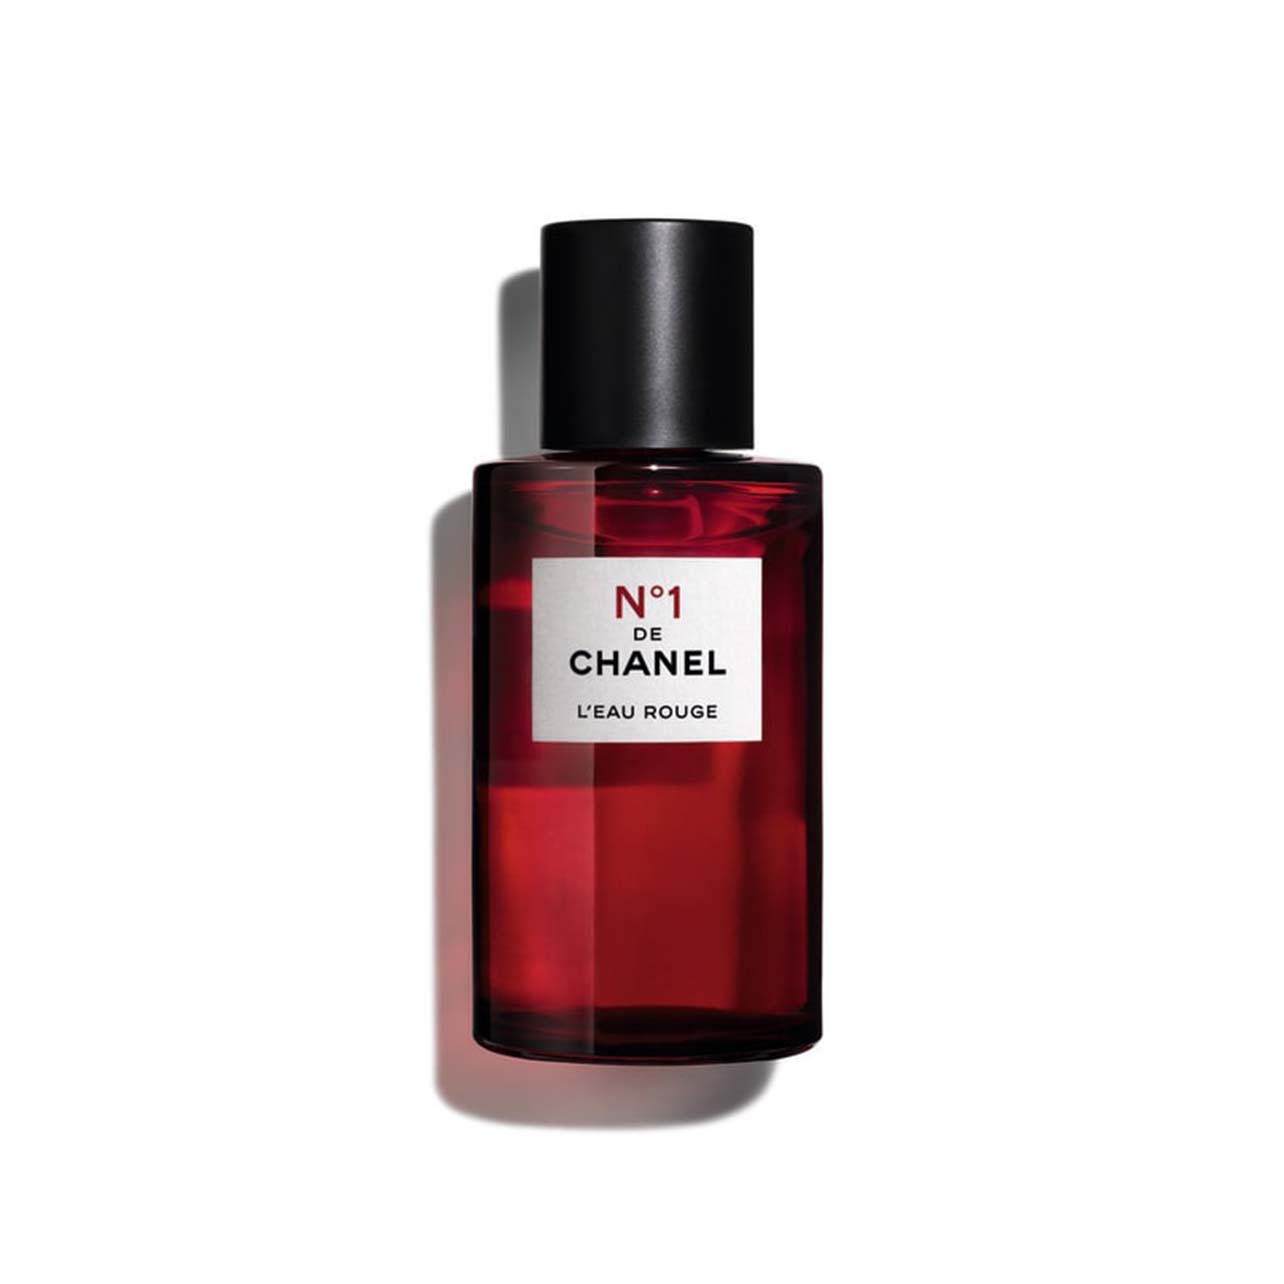 The Chanel L’eau Rouge fragrance bottle